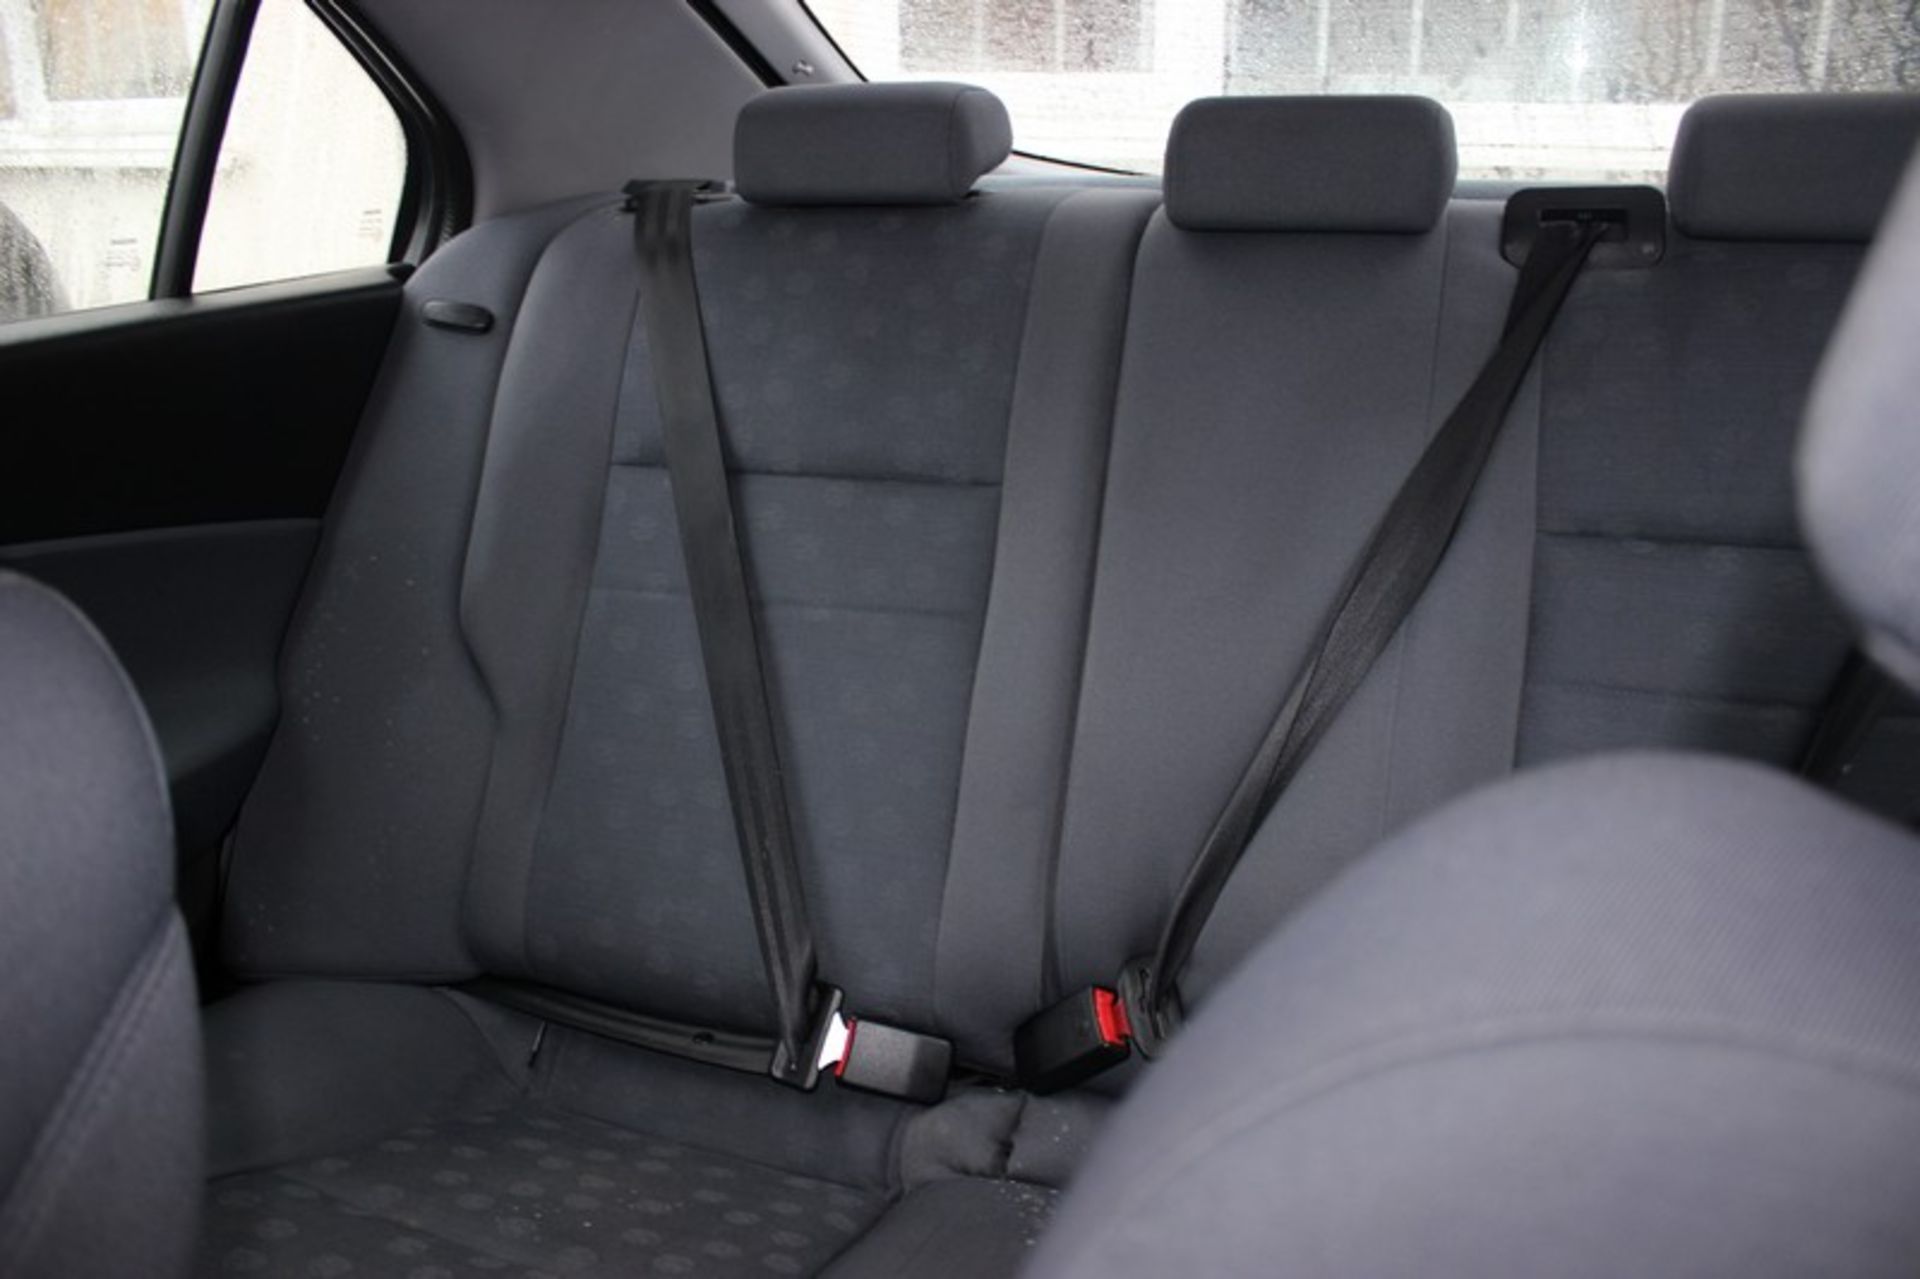 A 2005 Nissan Primera S five door hatchback, registration number OY55 AEK, 1769cc, petrol, manual, - Image 5 of 7